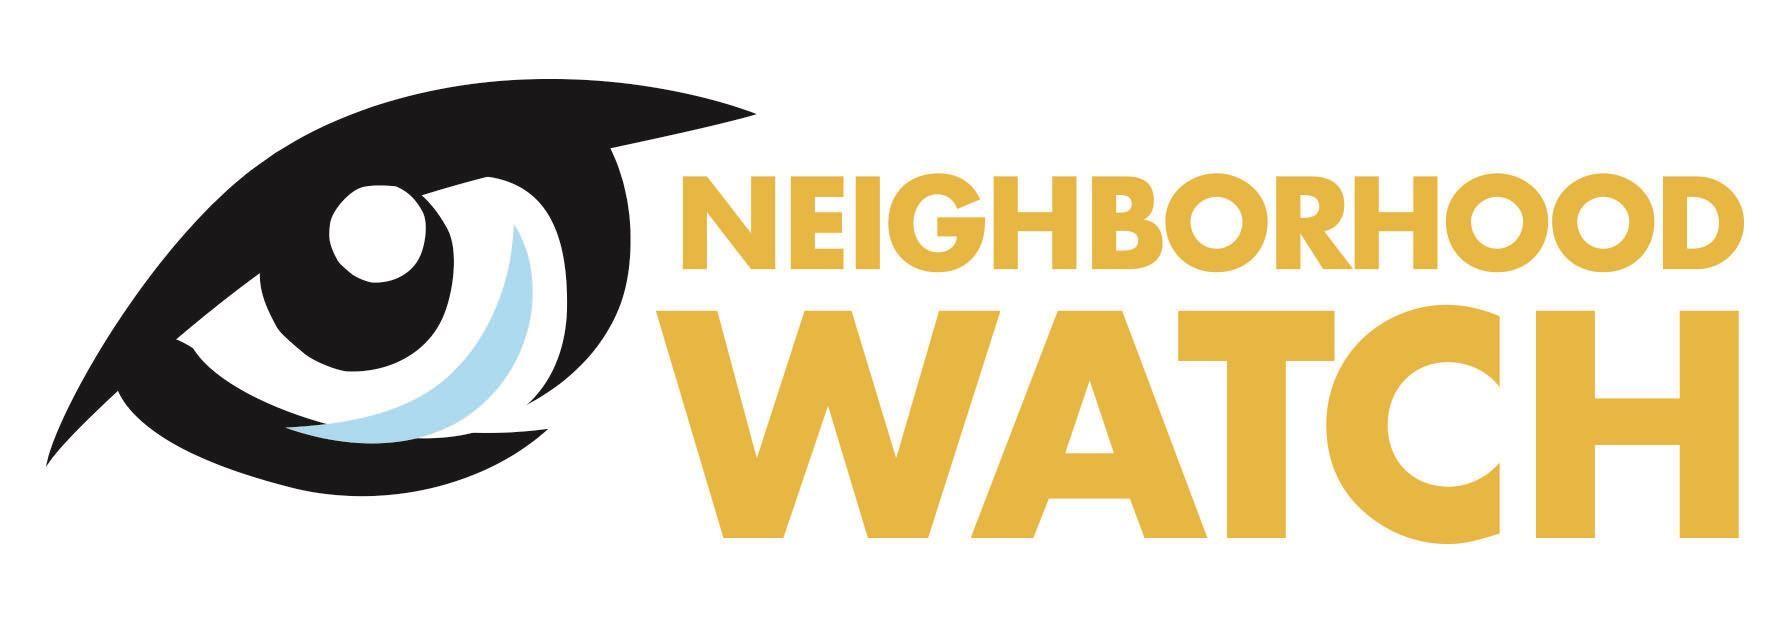 Neighborhood Watch Logo - Neighborhood Watch | Hewitt, TX - Official Website